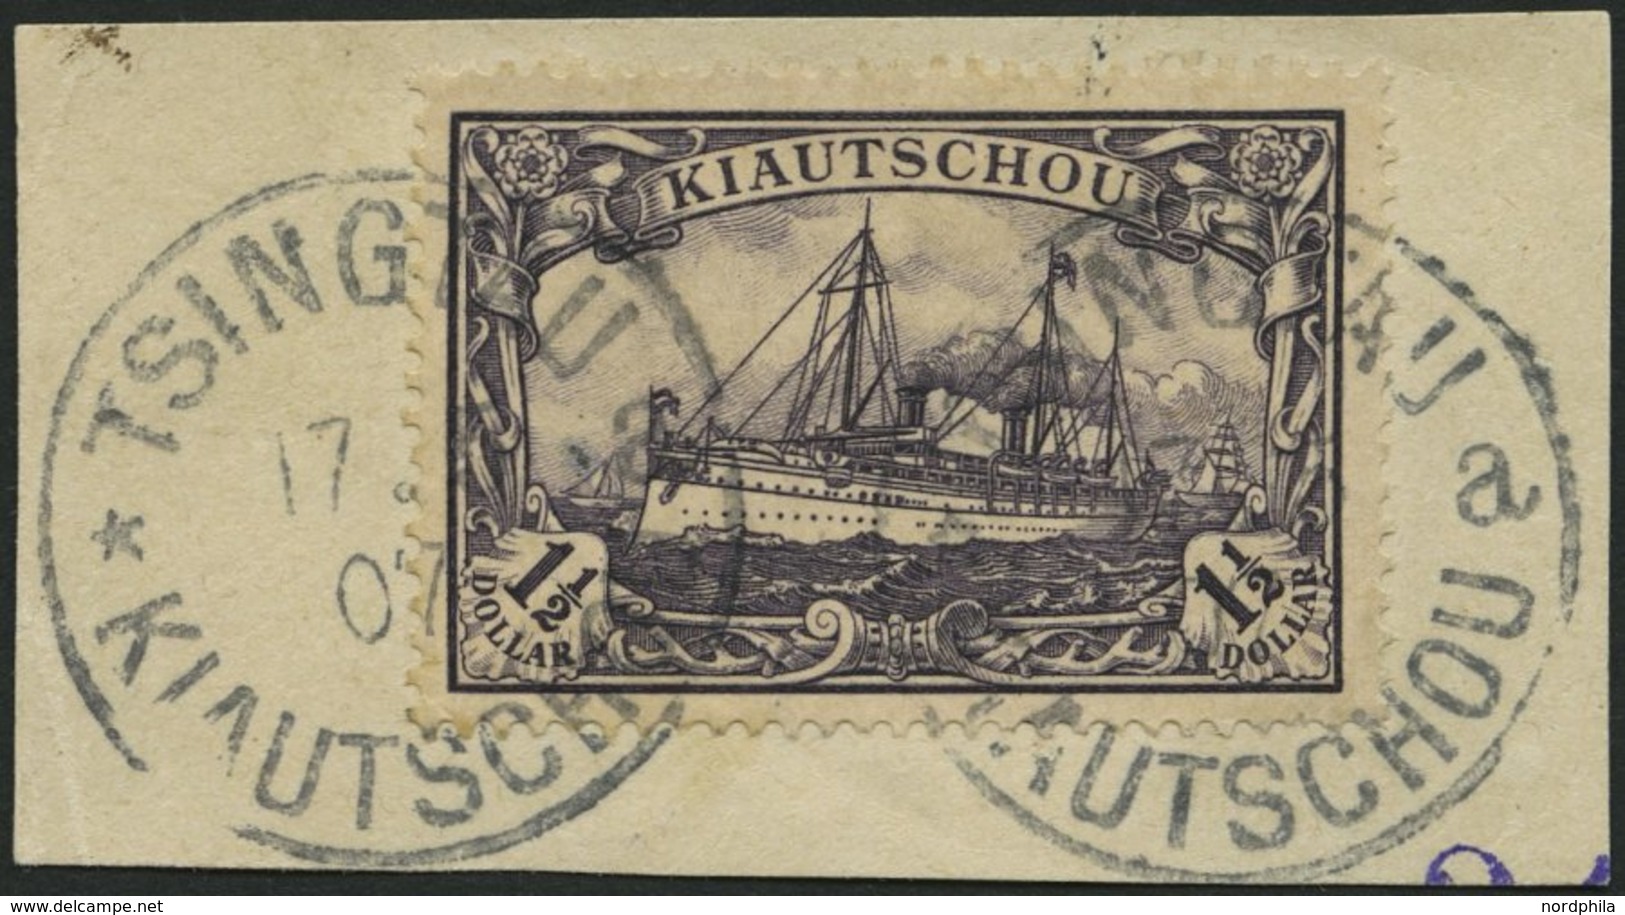 KIAUTSCHOU 36IAa BrfStk, 1905, 11/2 $ Schwarzviolett, Mit Wz., Friedensdruck, Kleiner Zahnfehler Sonst Prachtbriefstück, - Kiautchou